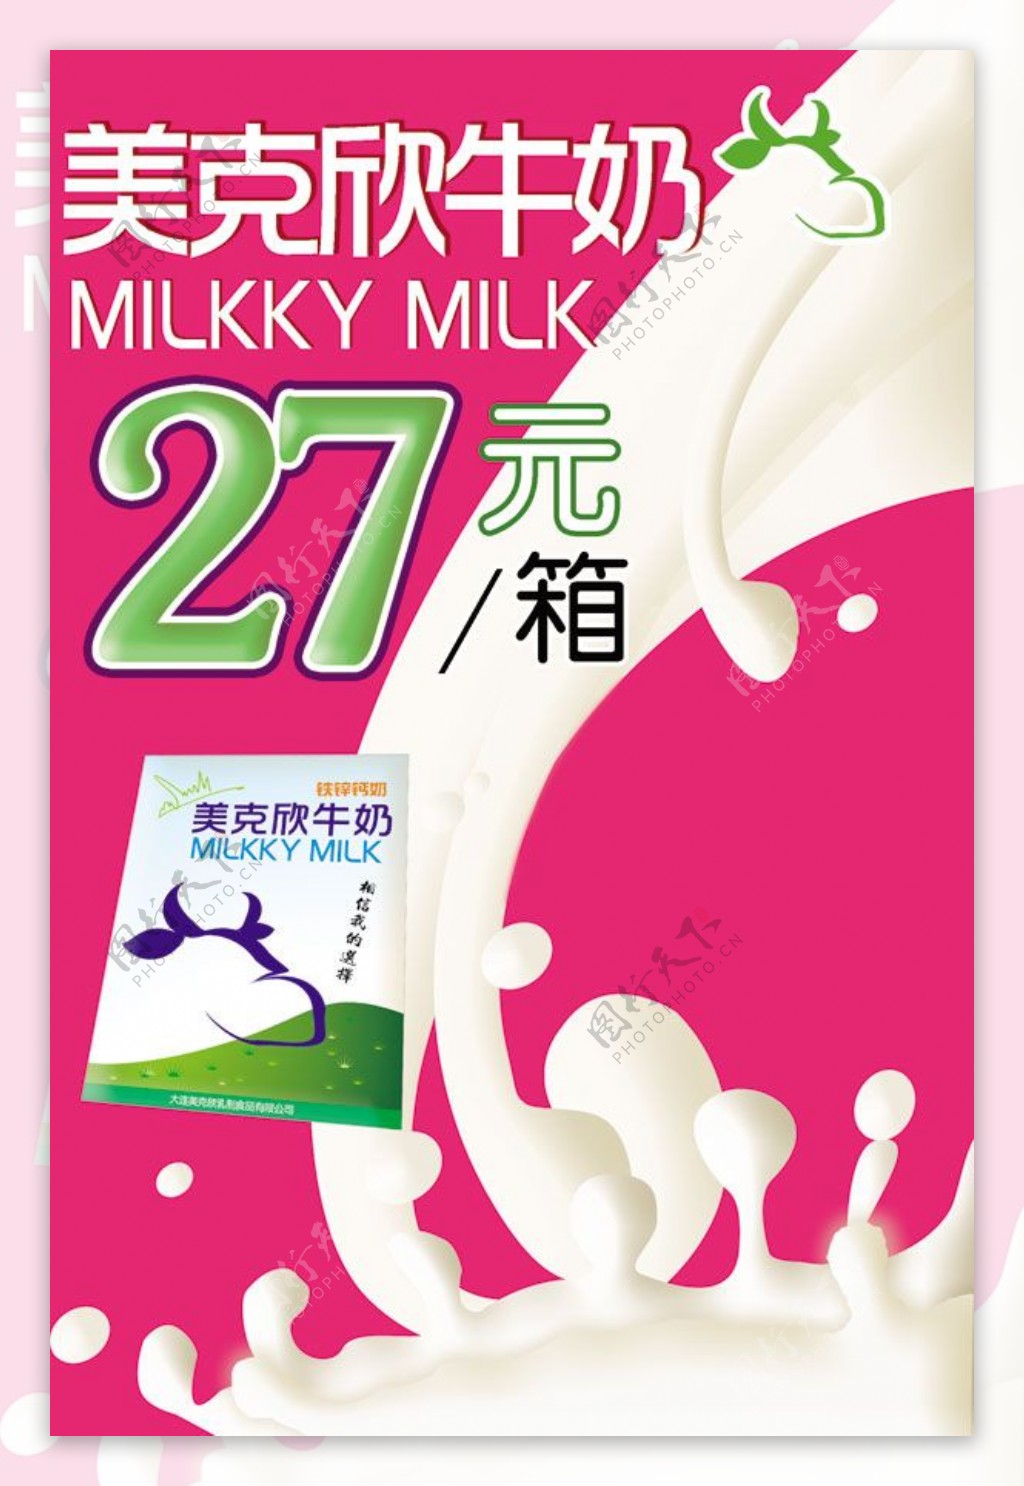 美克欣牛奶宣传广告海报psd